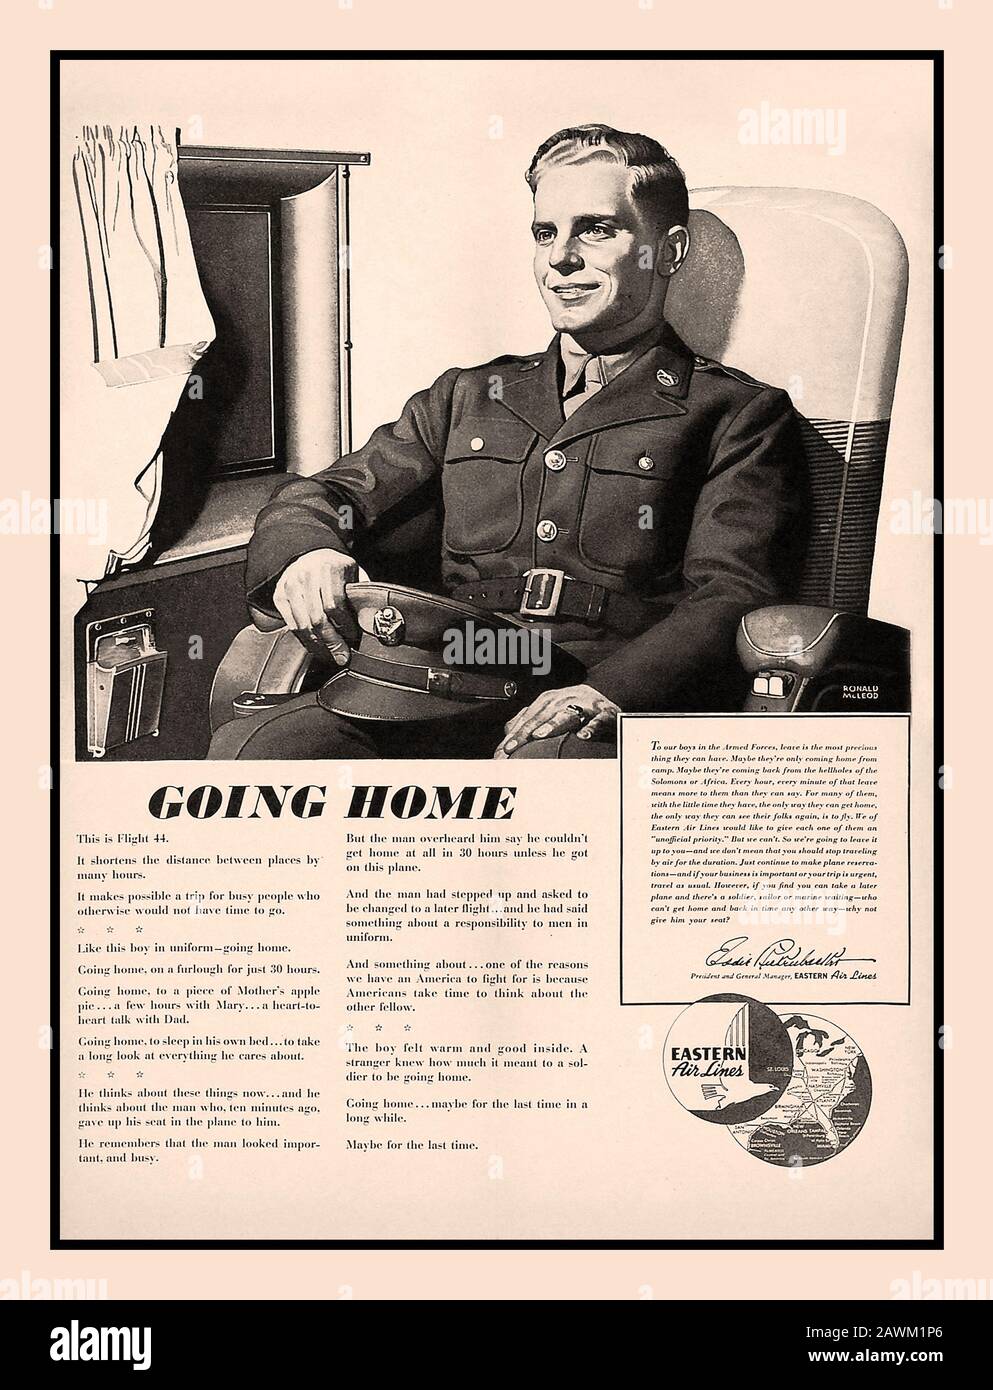 Publicité ancienne de la seconde Guerre mondiale dans la presse patriotique la publicité militaire de Eastern Airlines « Going Home » de 1943 illustre un membre de l'armée qui rentre à la maison en congé de guerre, via Eastern Airlines. États-Unis deuxième Guerre mondiale Banque D'Images